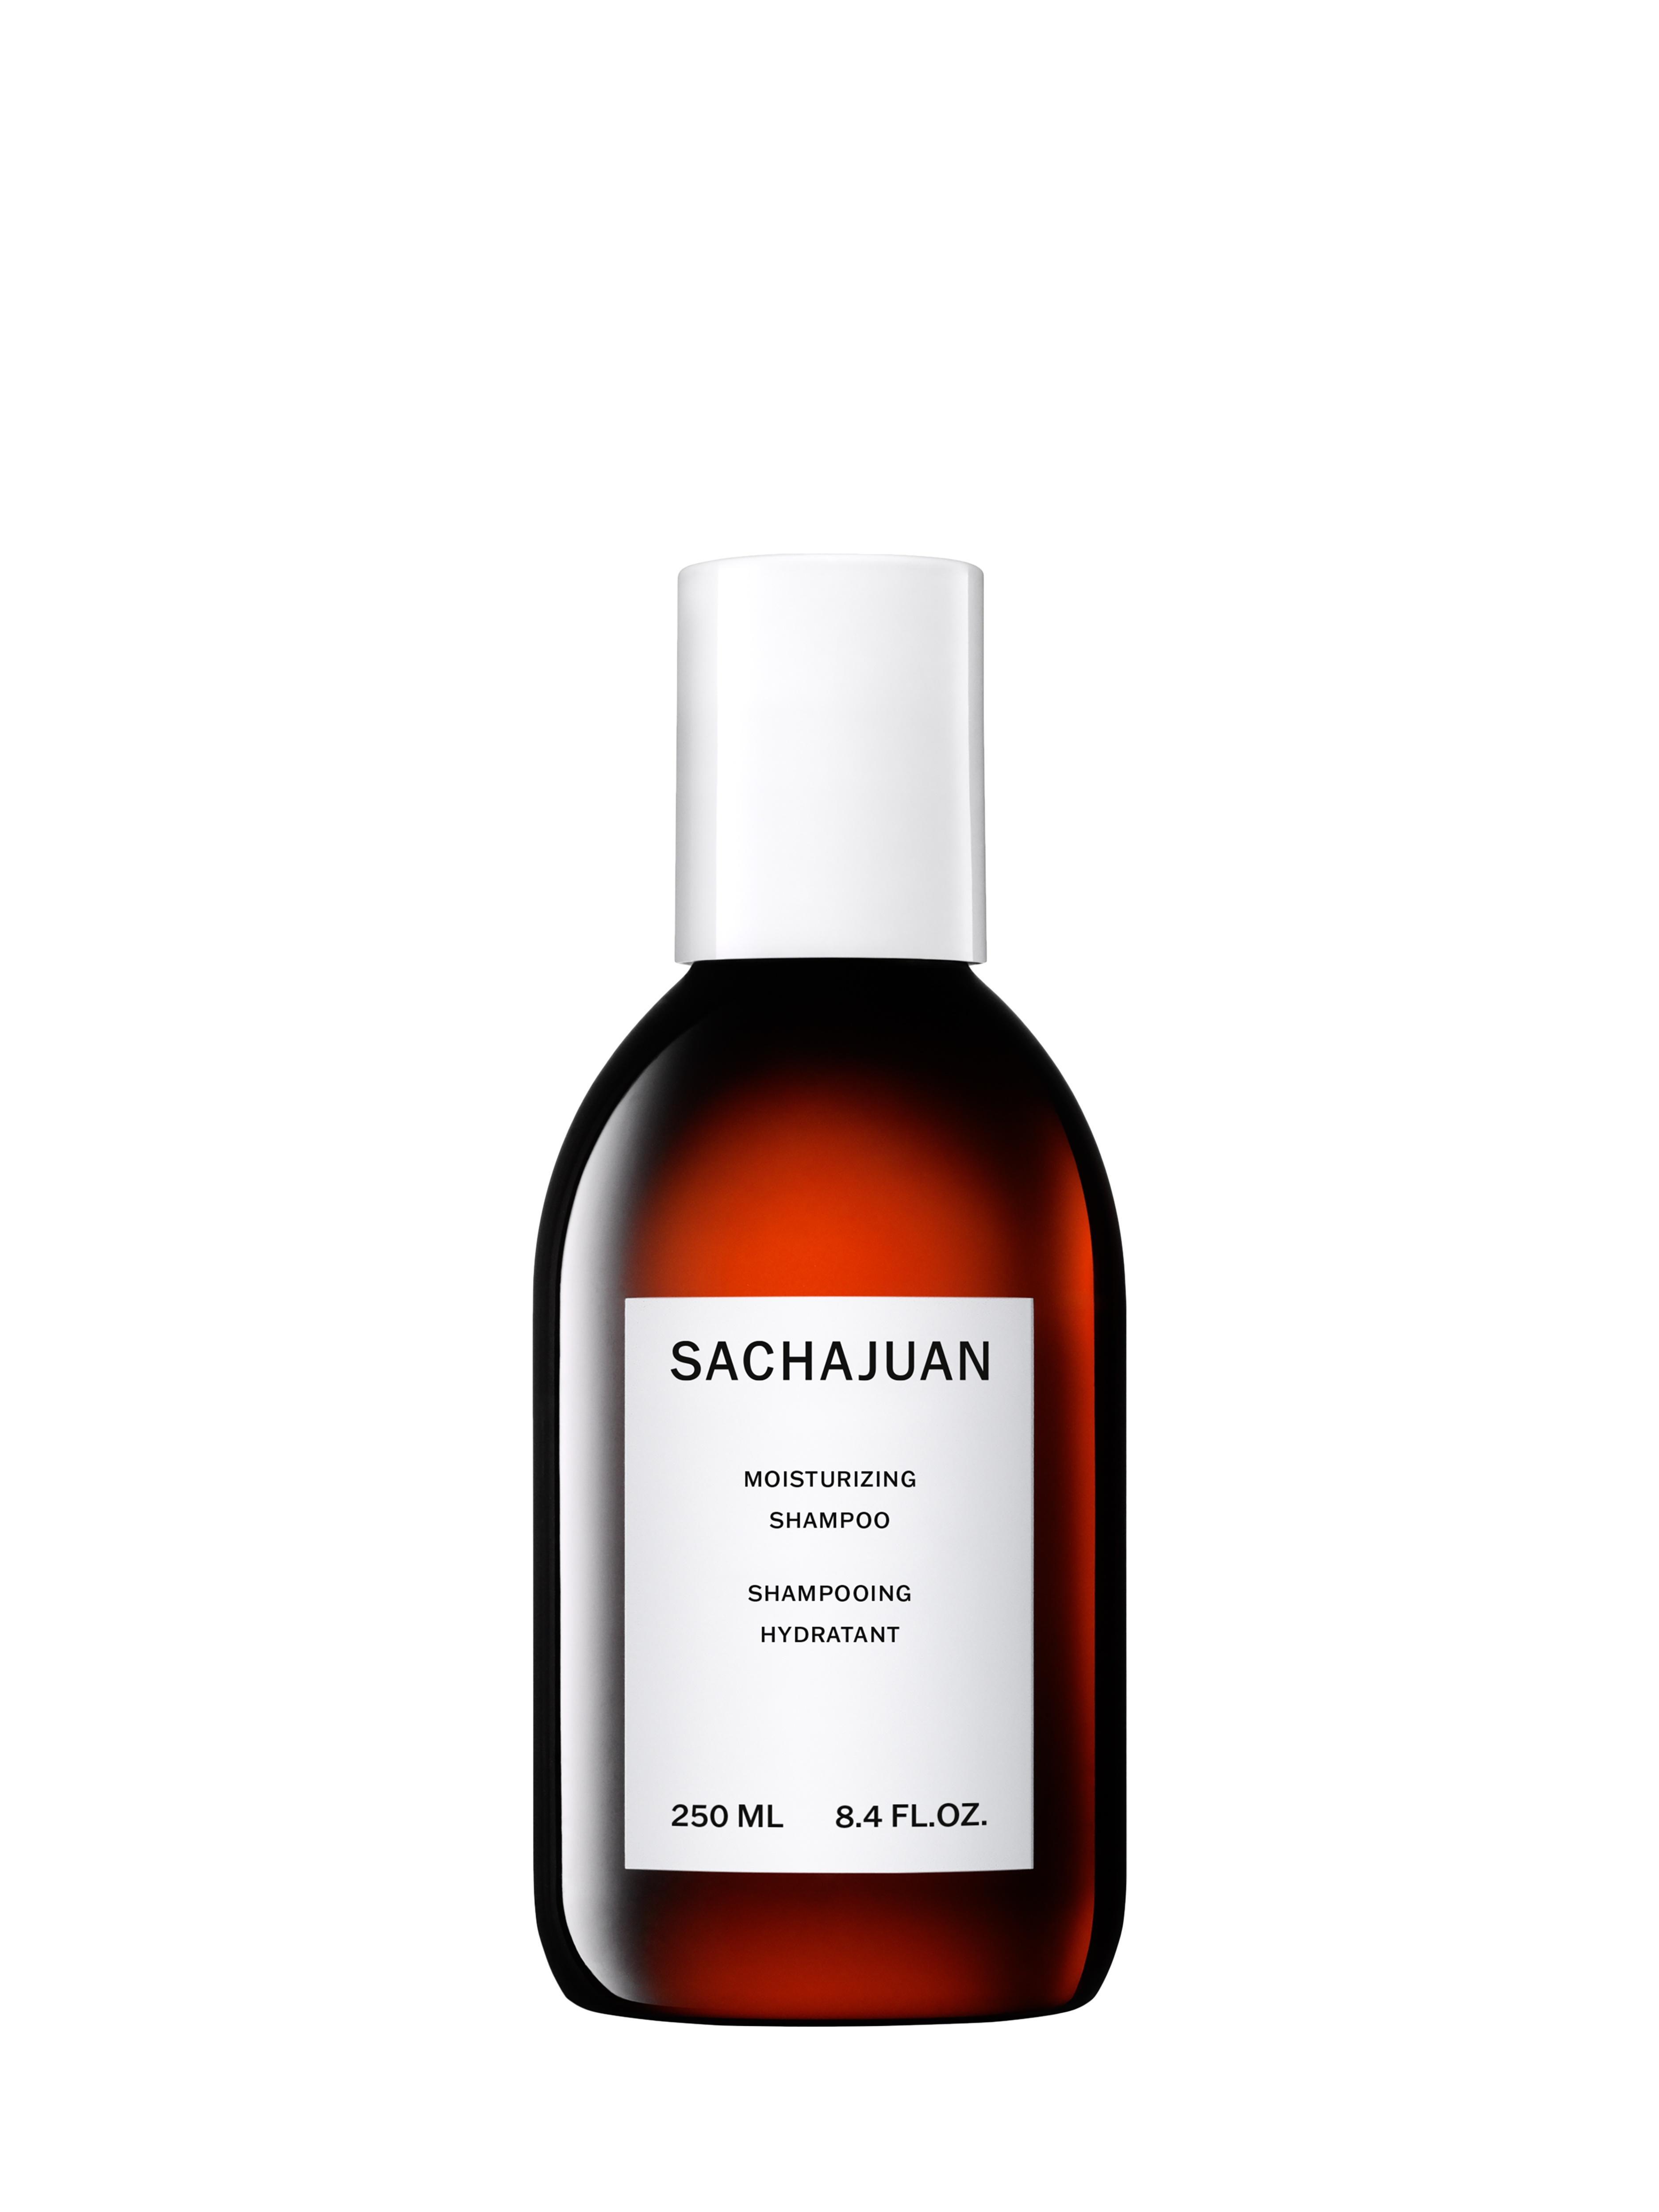 SACHAJUAN - Moisturizing Shampoo